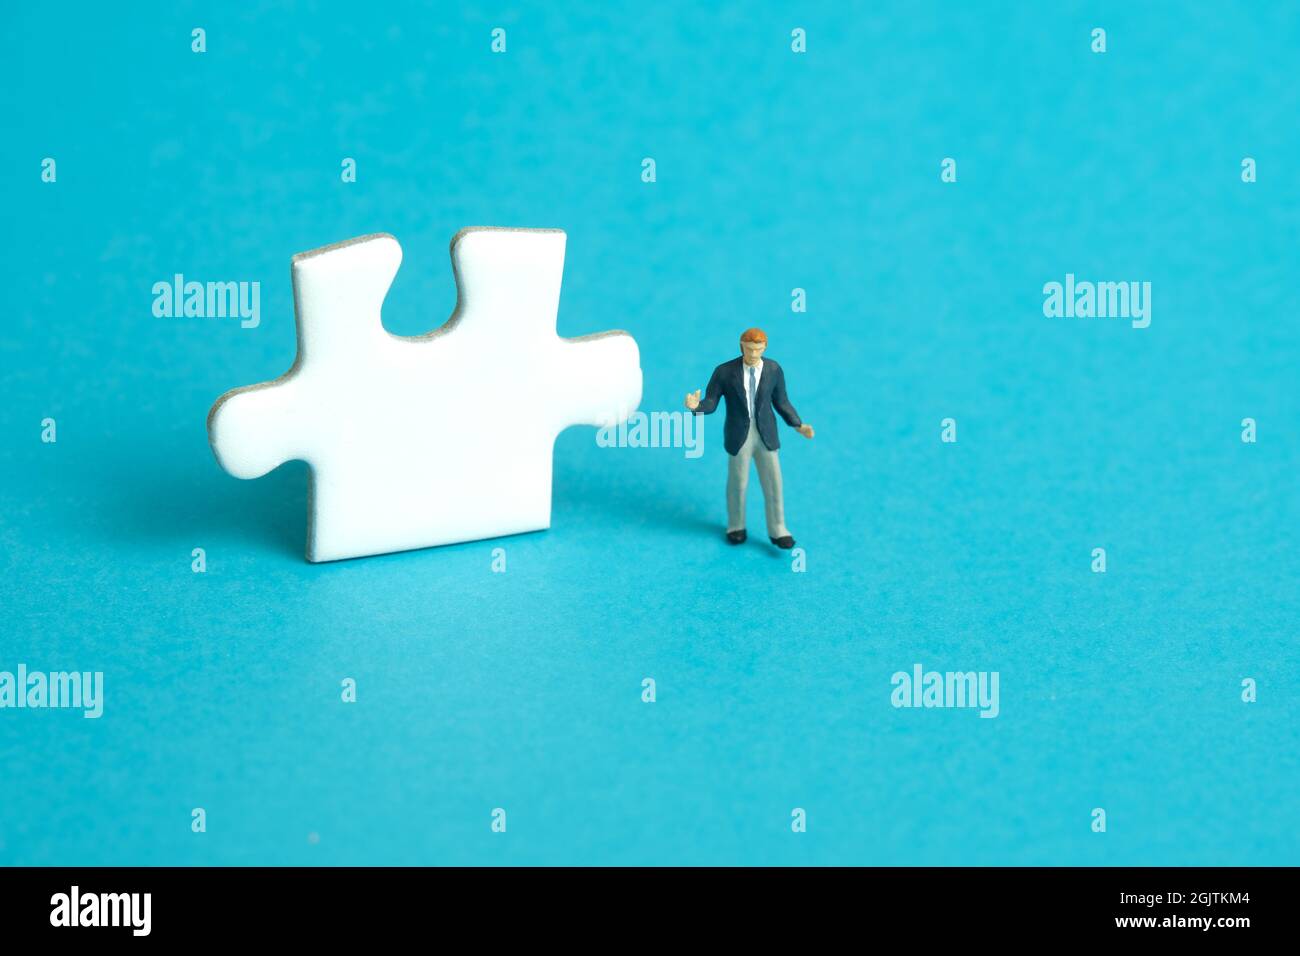 Miniatur Menschen Spielzeug Figur Fotografie. Ein schnupfender Geschäftsmann, der vor einem Puzzle-Puzzleteil steht. Isoliert auf blauem Hintergrund. Bildfoto Stockfoto